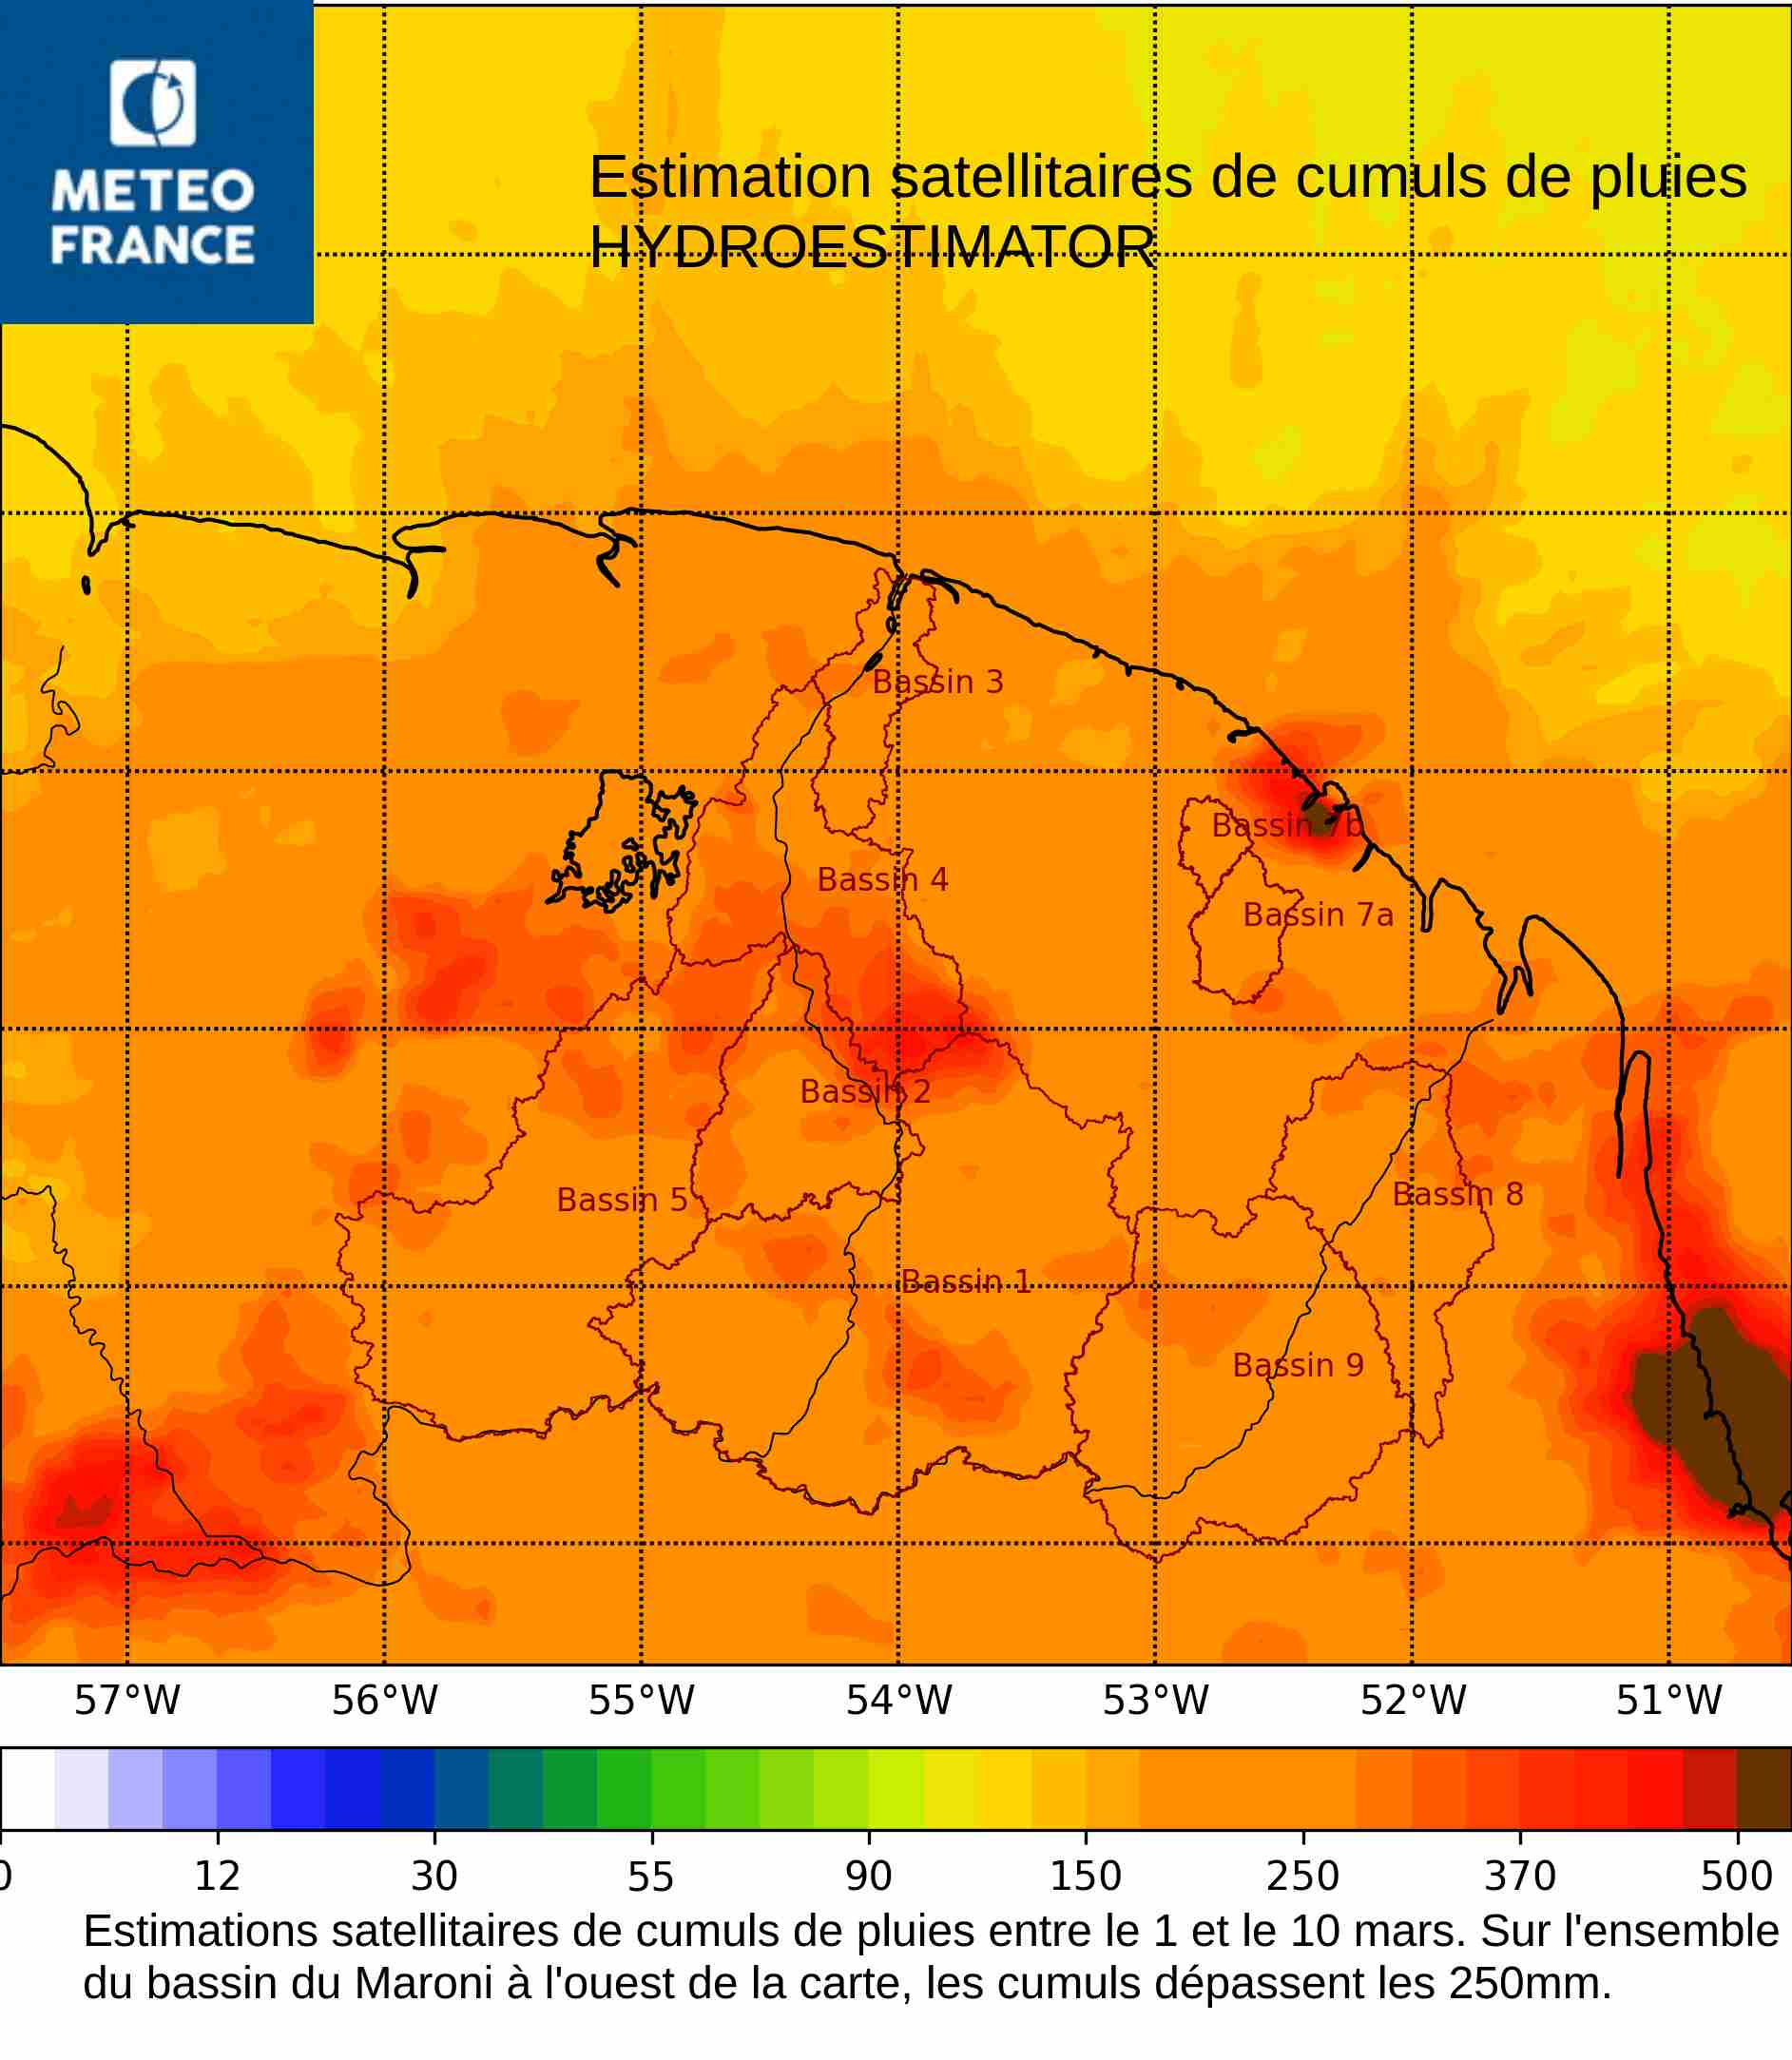 Estimations satellitaires de cumuls de pluies sur la période du 1 au 10 mars 2022